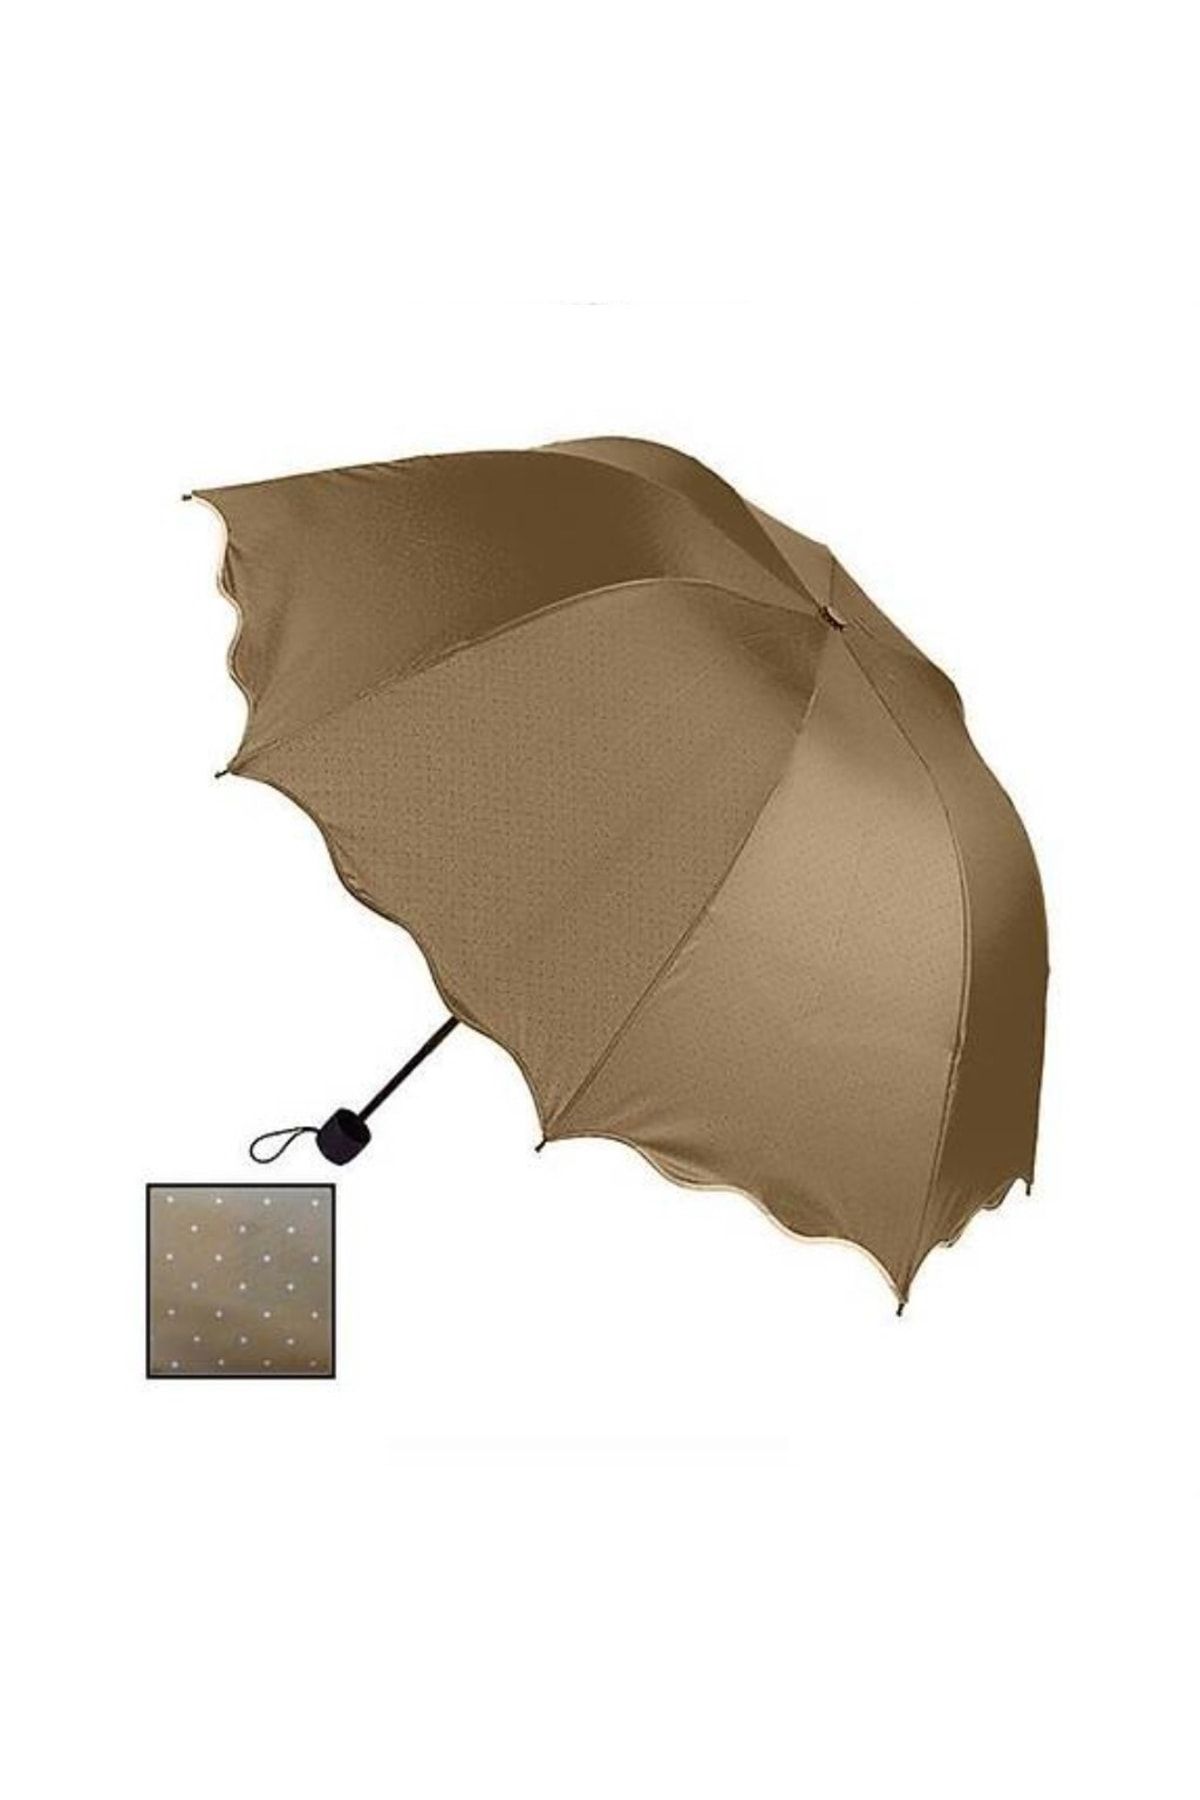 BAMTEBİ Rubenis Çanta Boy Manuel Unisex Chery Yarasa Model Benekli Yağmur Şemsiyesi Katlanır Mini Semsiye